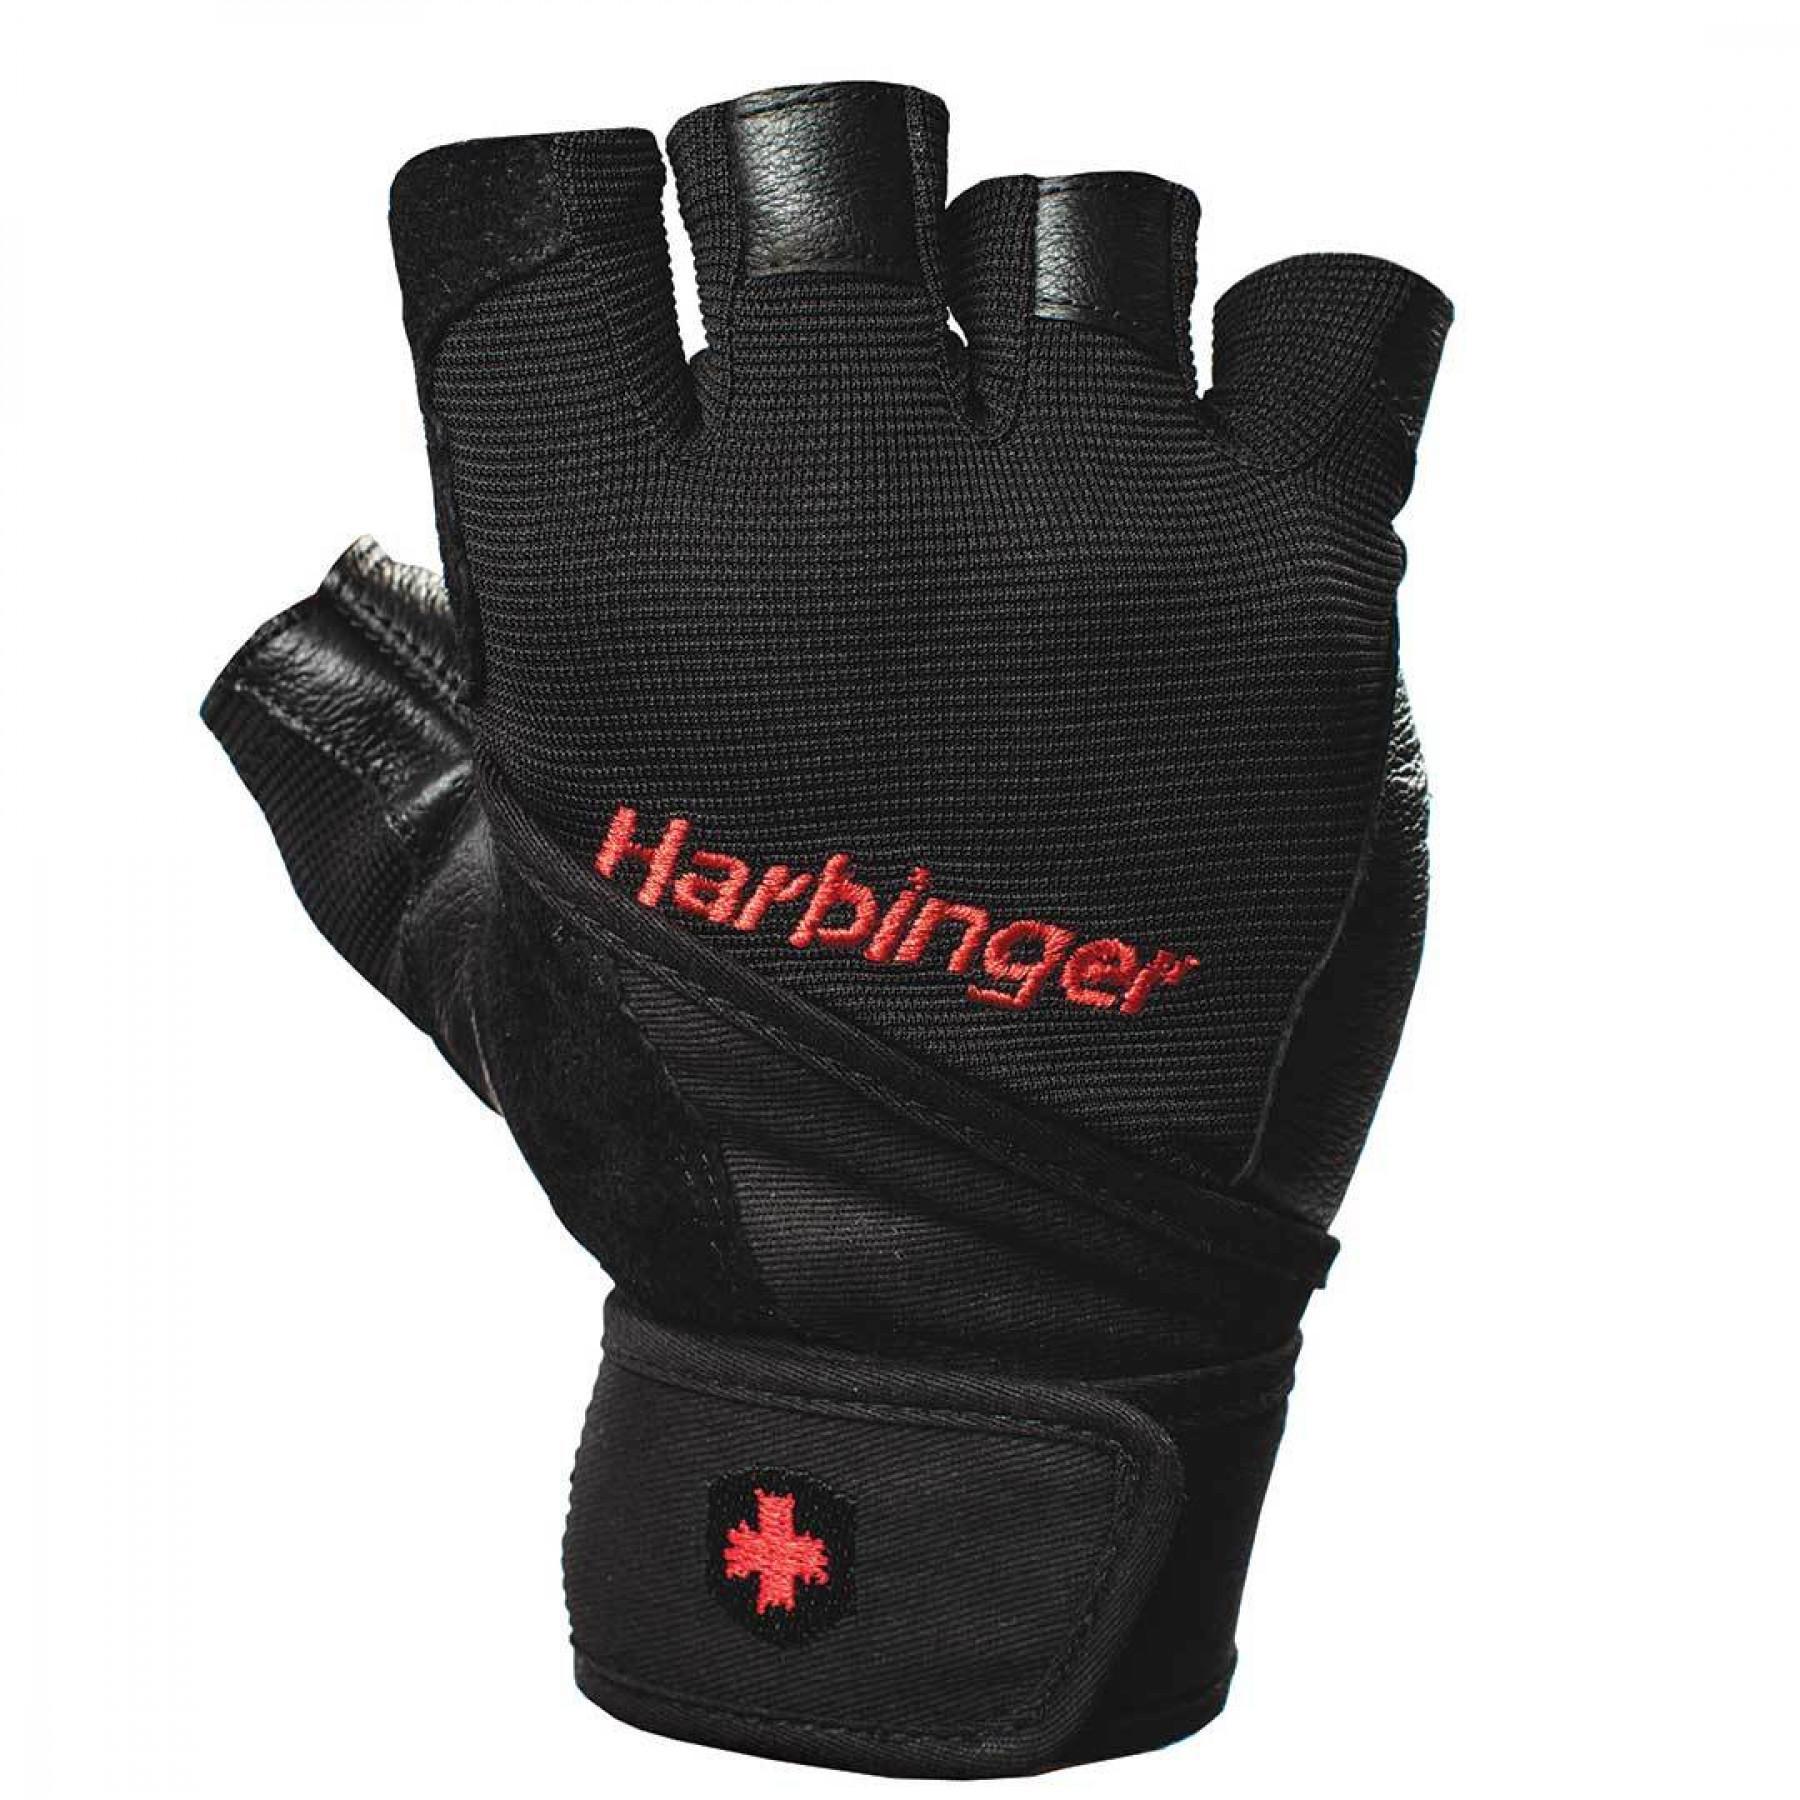 Handske Harbinger Pro WristWrap